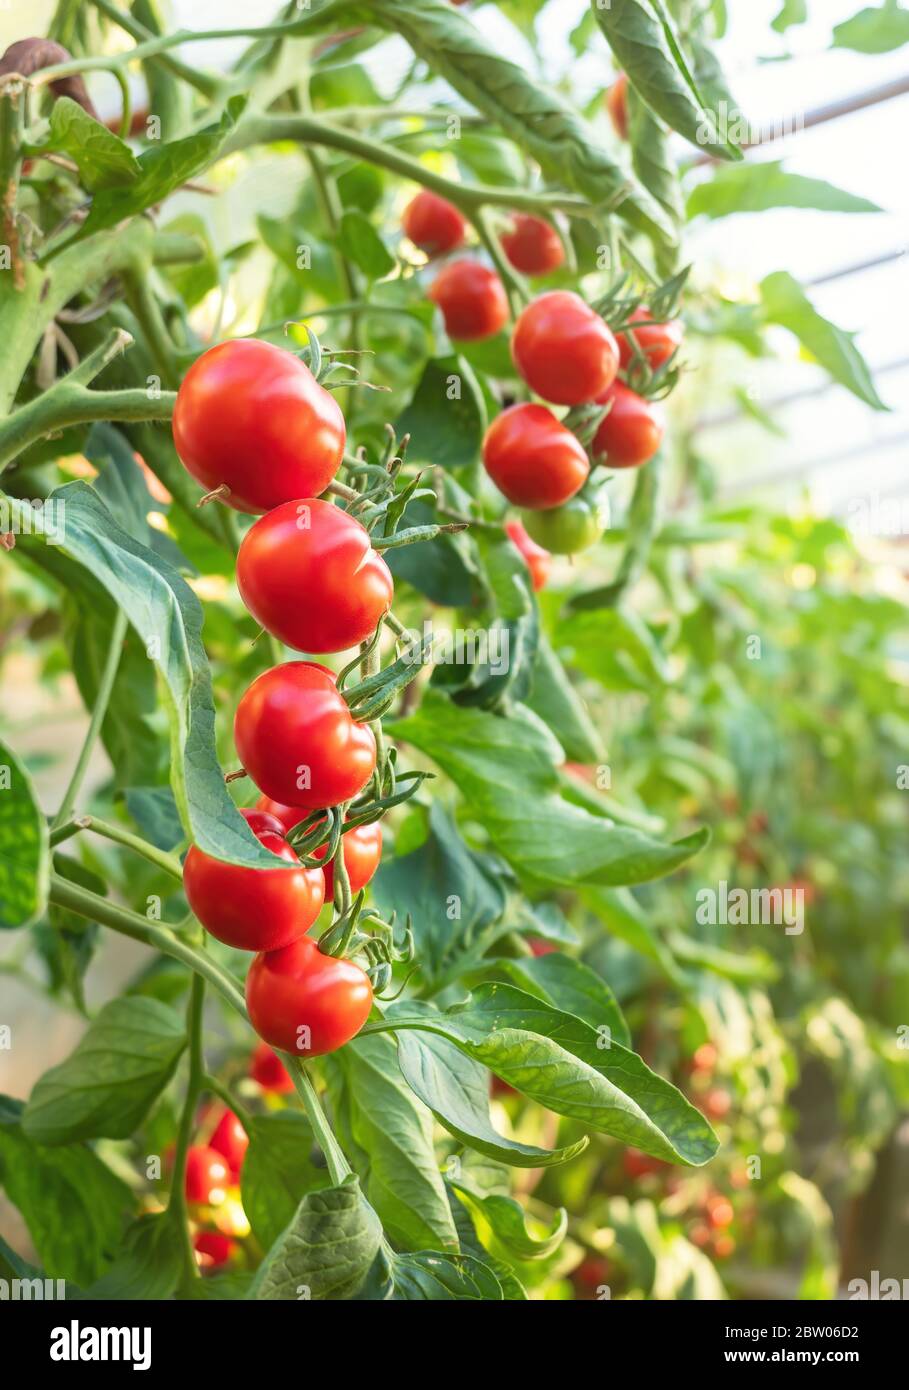 Plante de tomate mûre en serre. Bouquet de tomates naturelles rouges fraîches sur une branche dans un potager biologique. Arrière-plan et espace de copie flous Banque D'Images